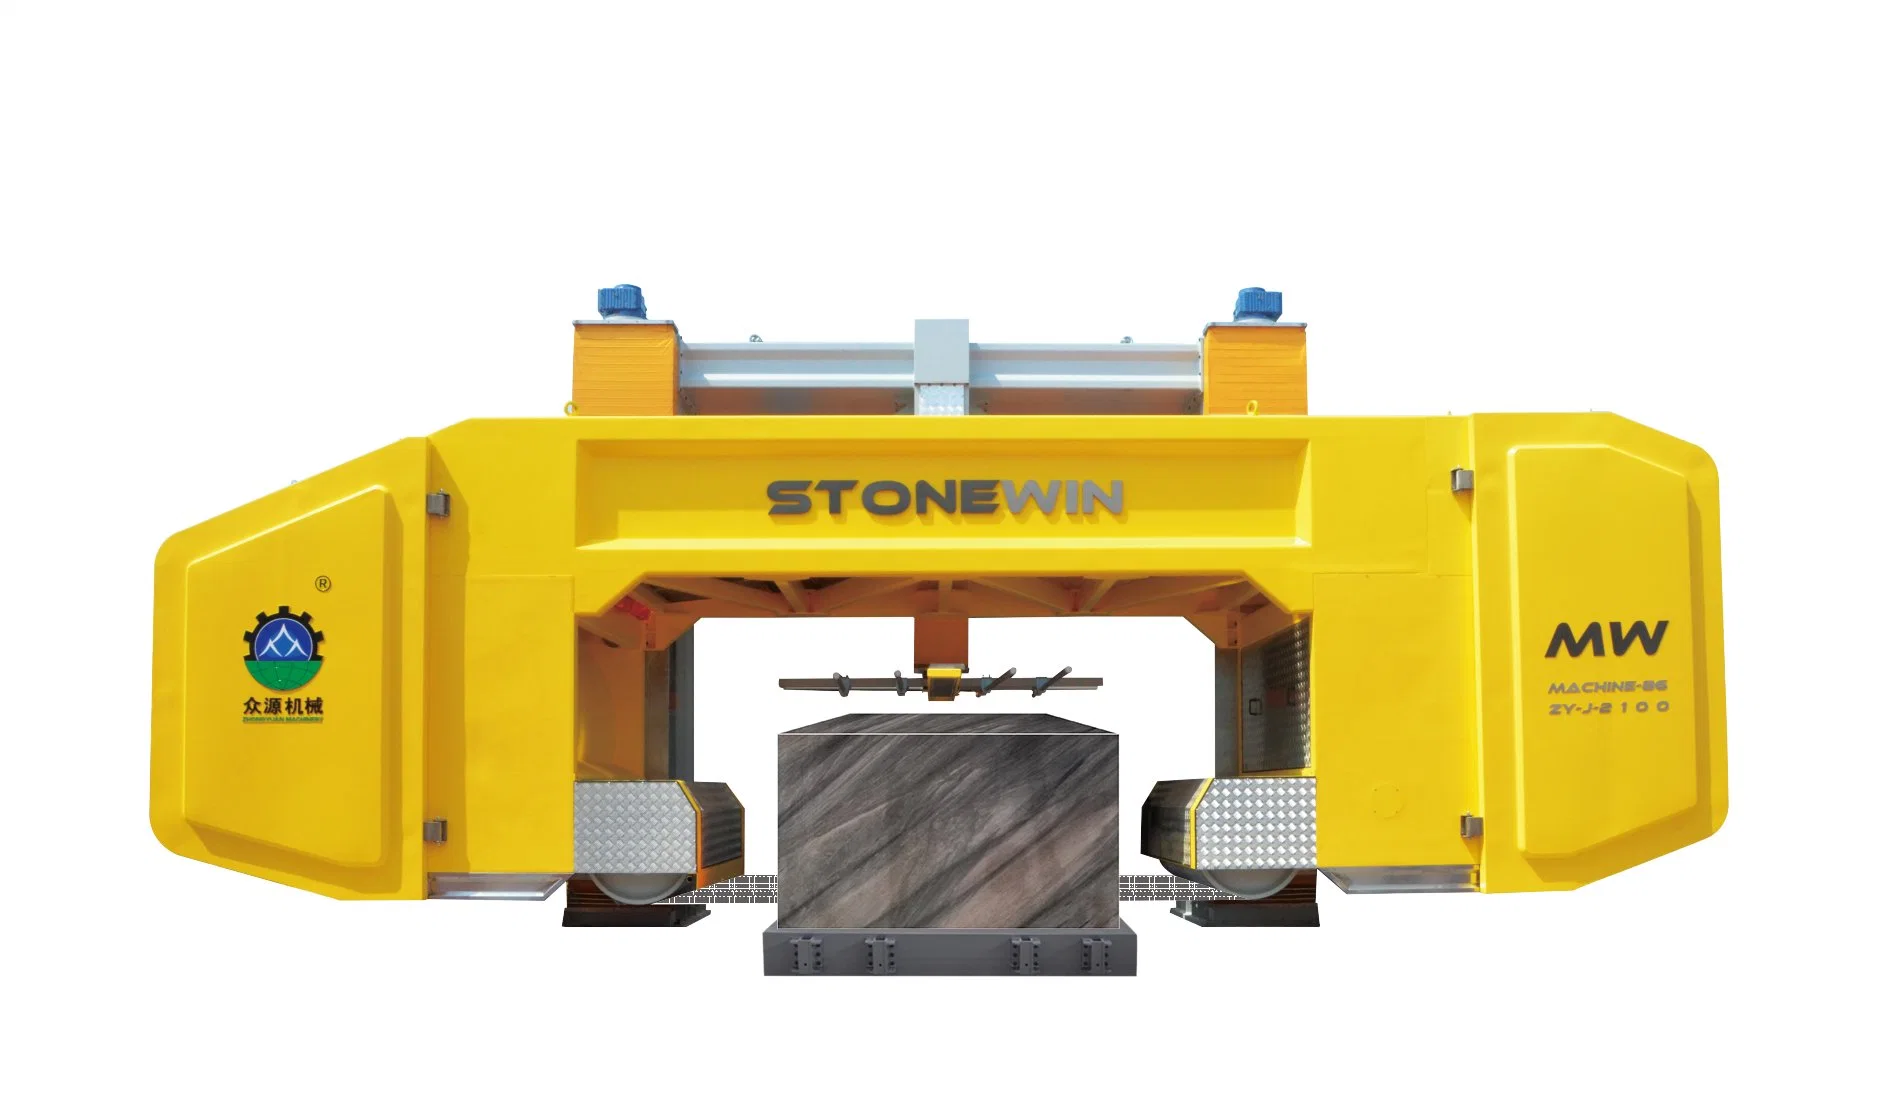 Zhongyuan Stonewin 58 fils Diamond Multi-Wire machine: Fabrication de pierre en élévation avec découpe de blocs de précision